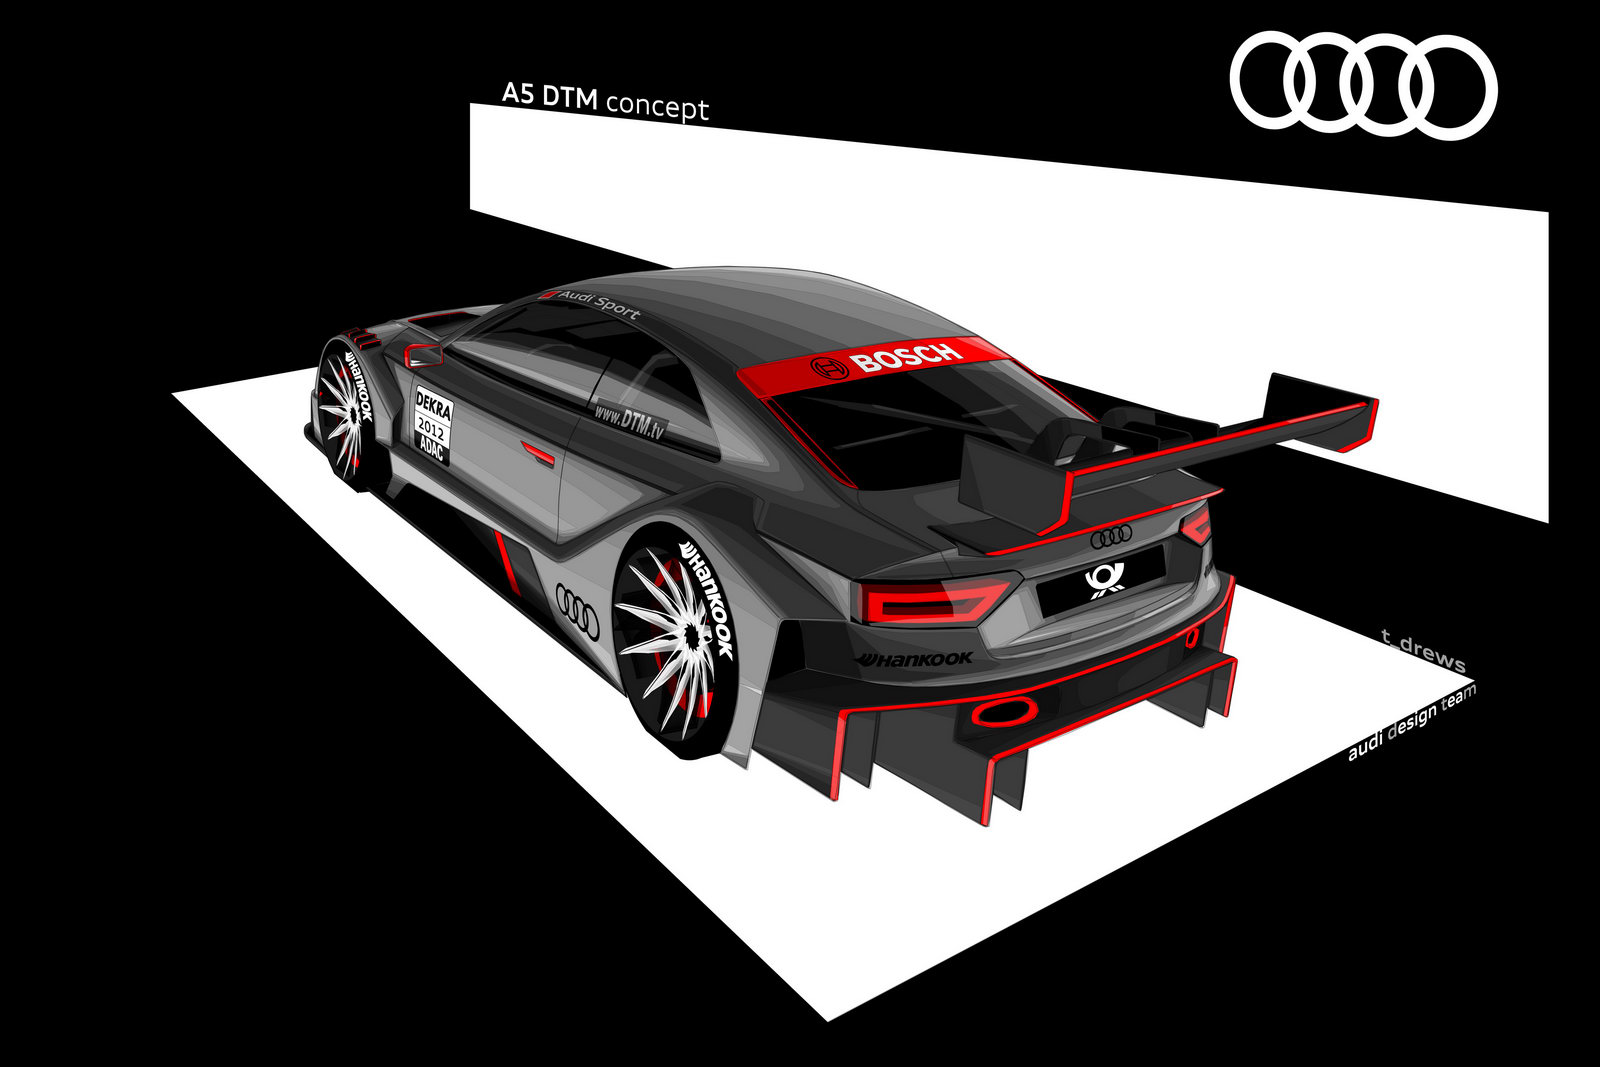 2012 Audi A5 DTM racer render